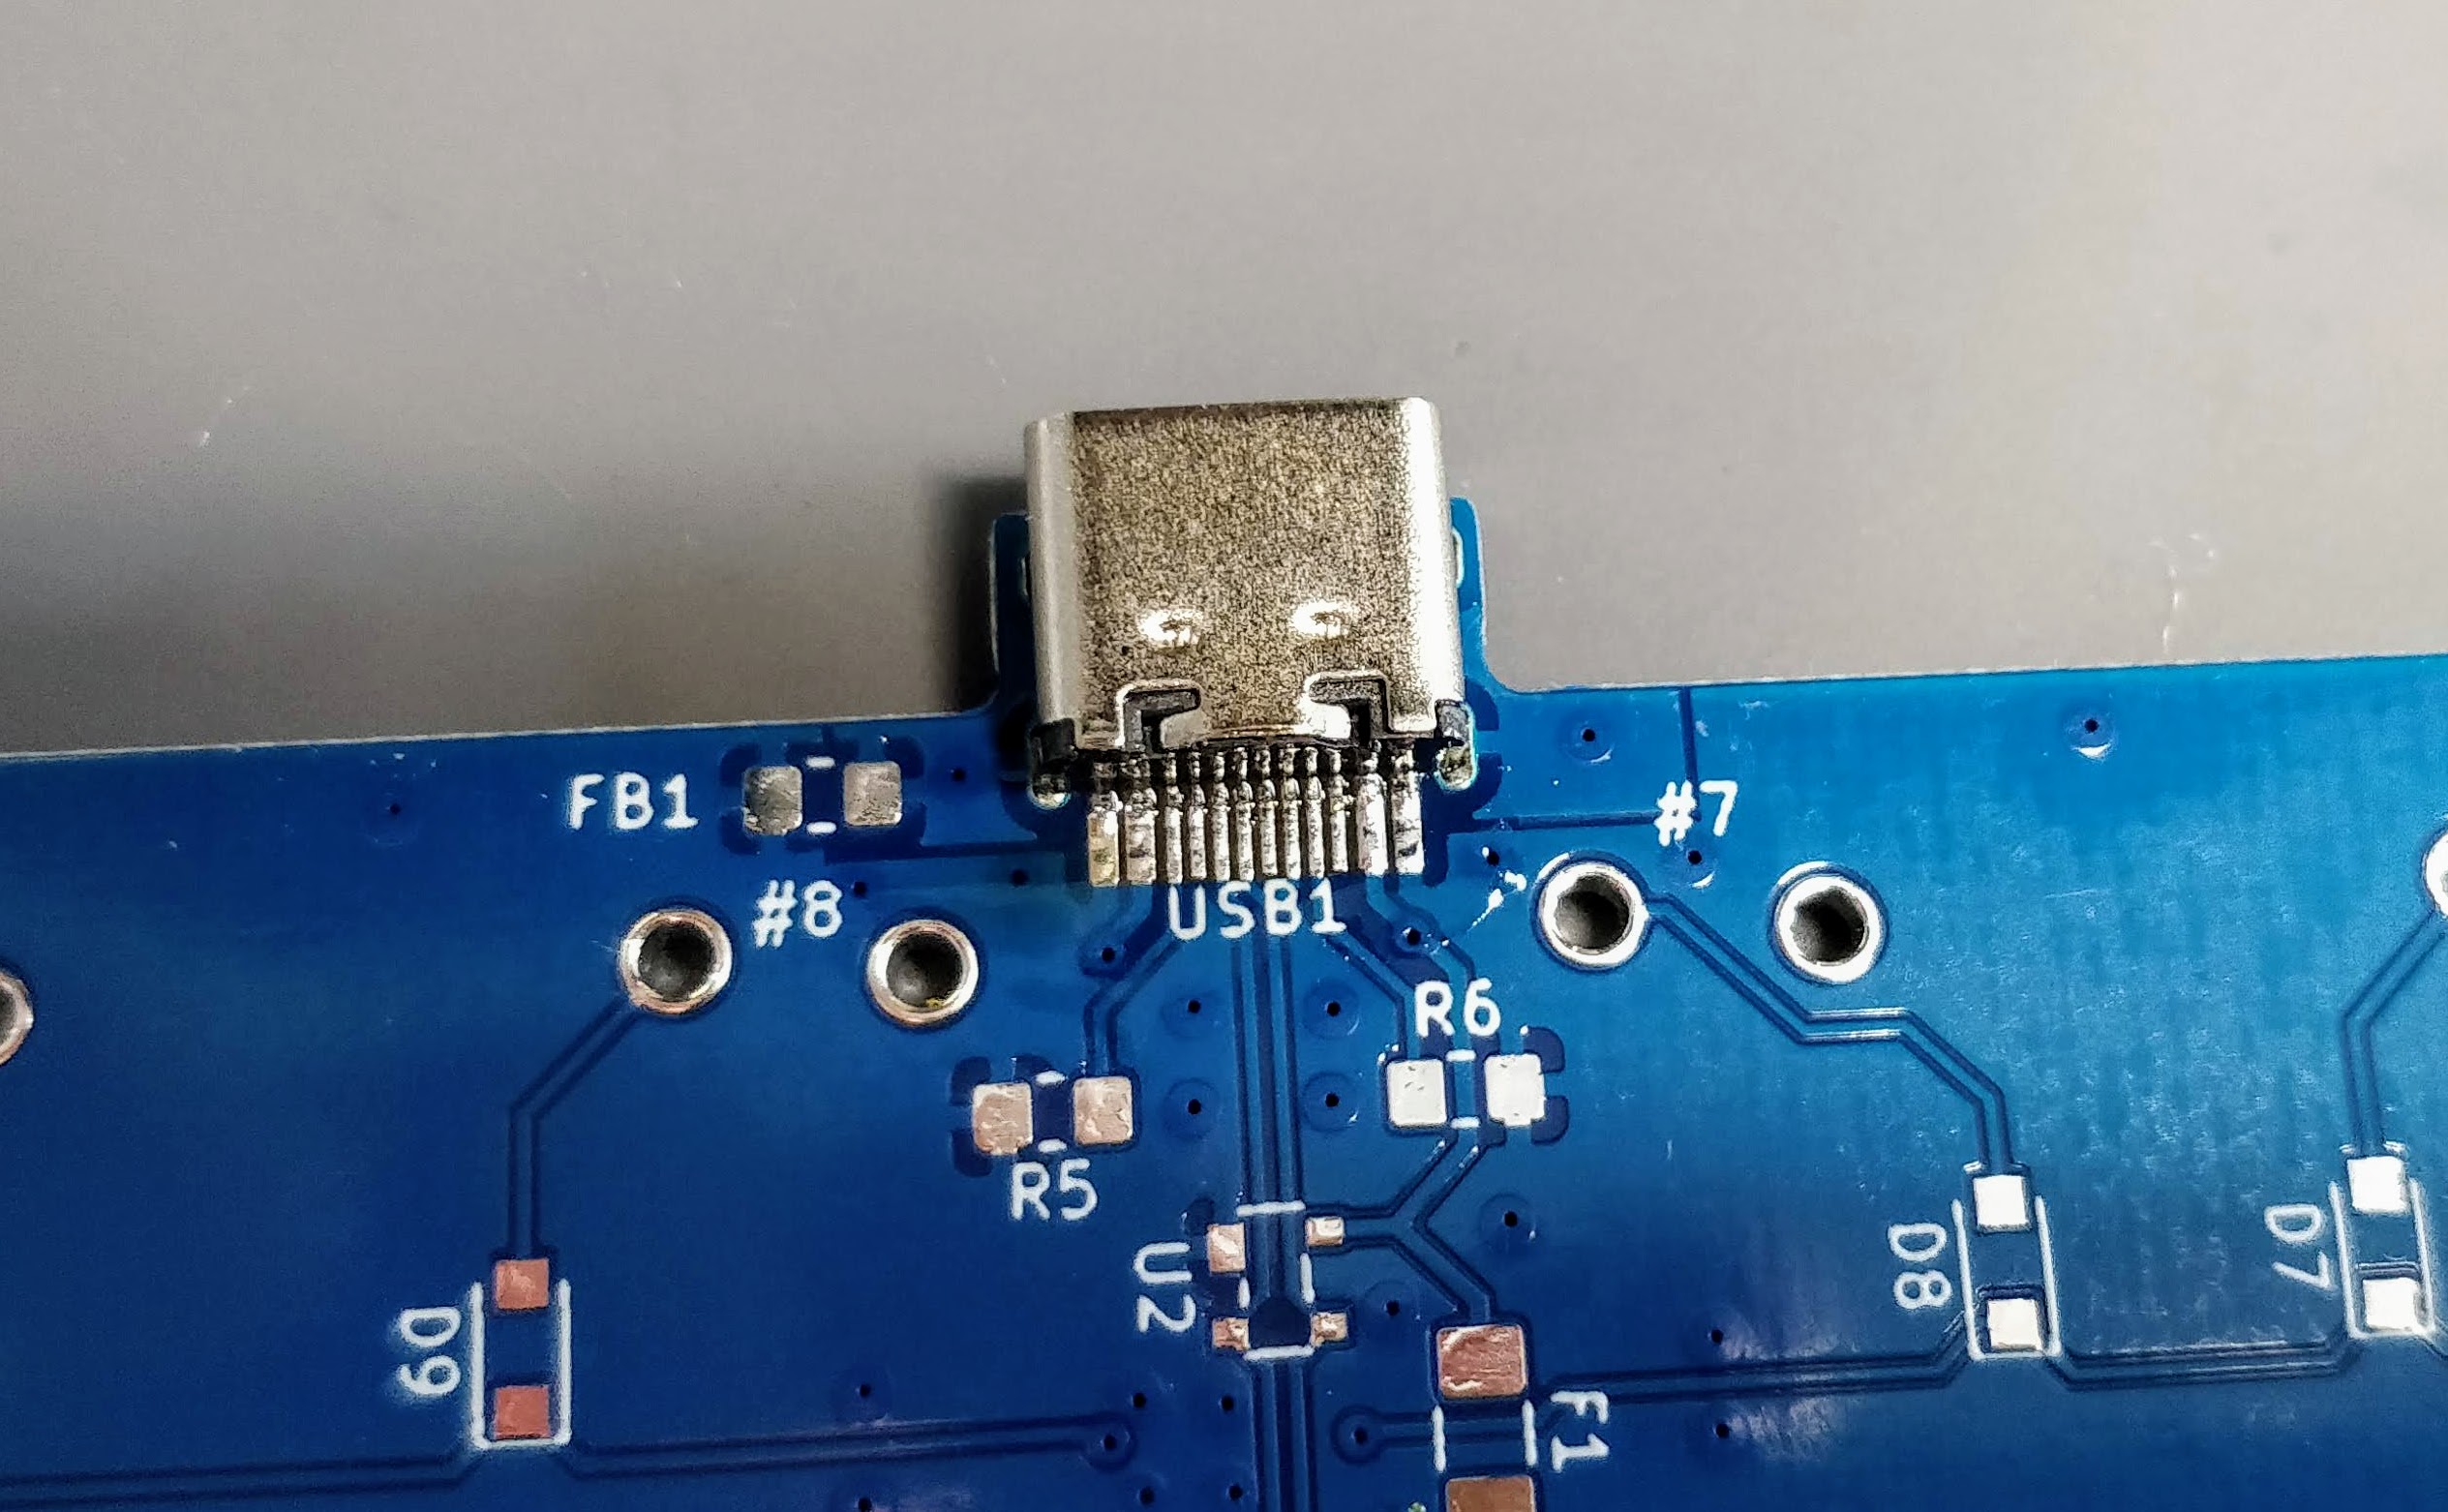 Drag soldered connector